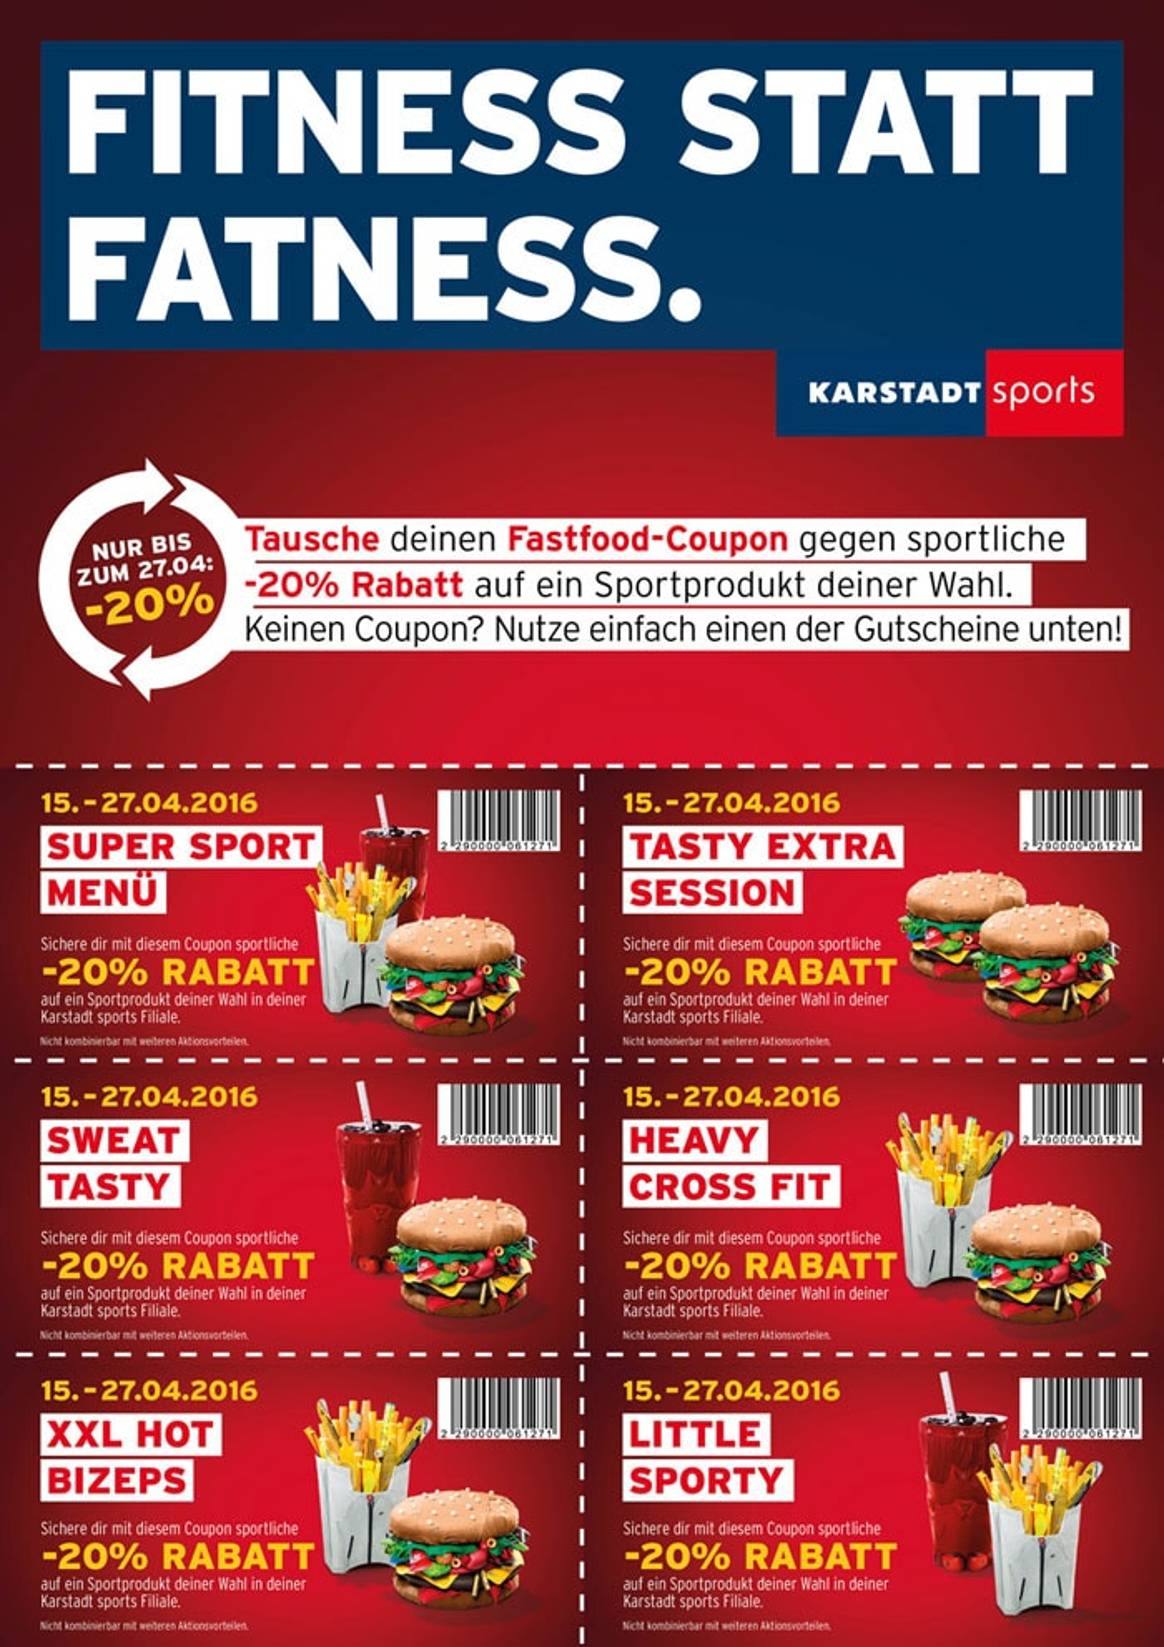 Karstadt sports startet „Fitness statt Fatness“ -Kampagne